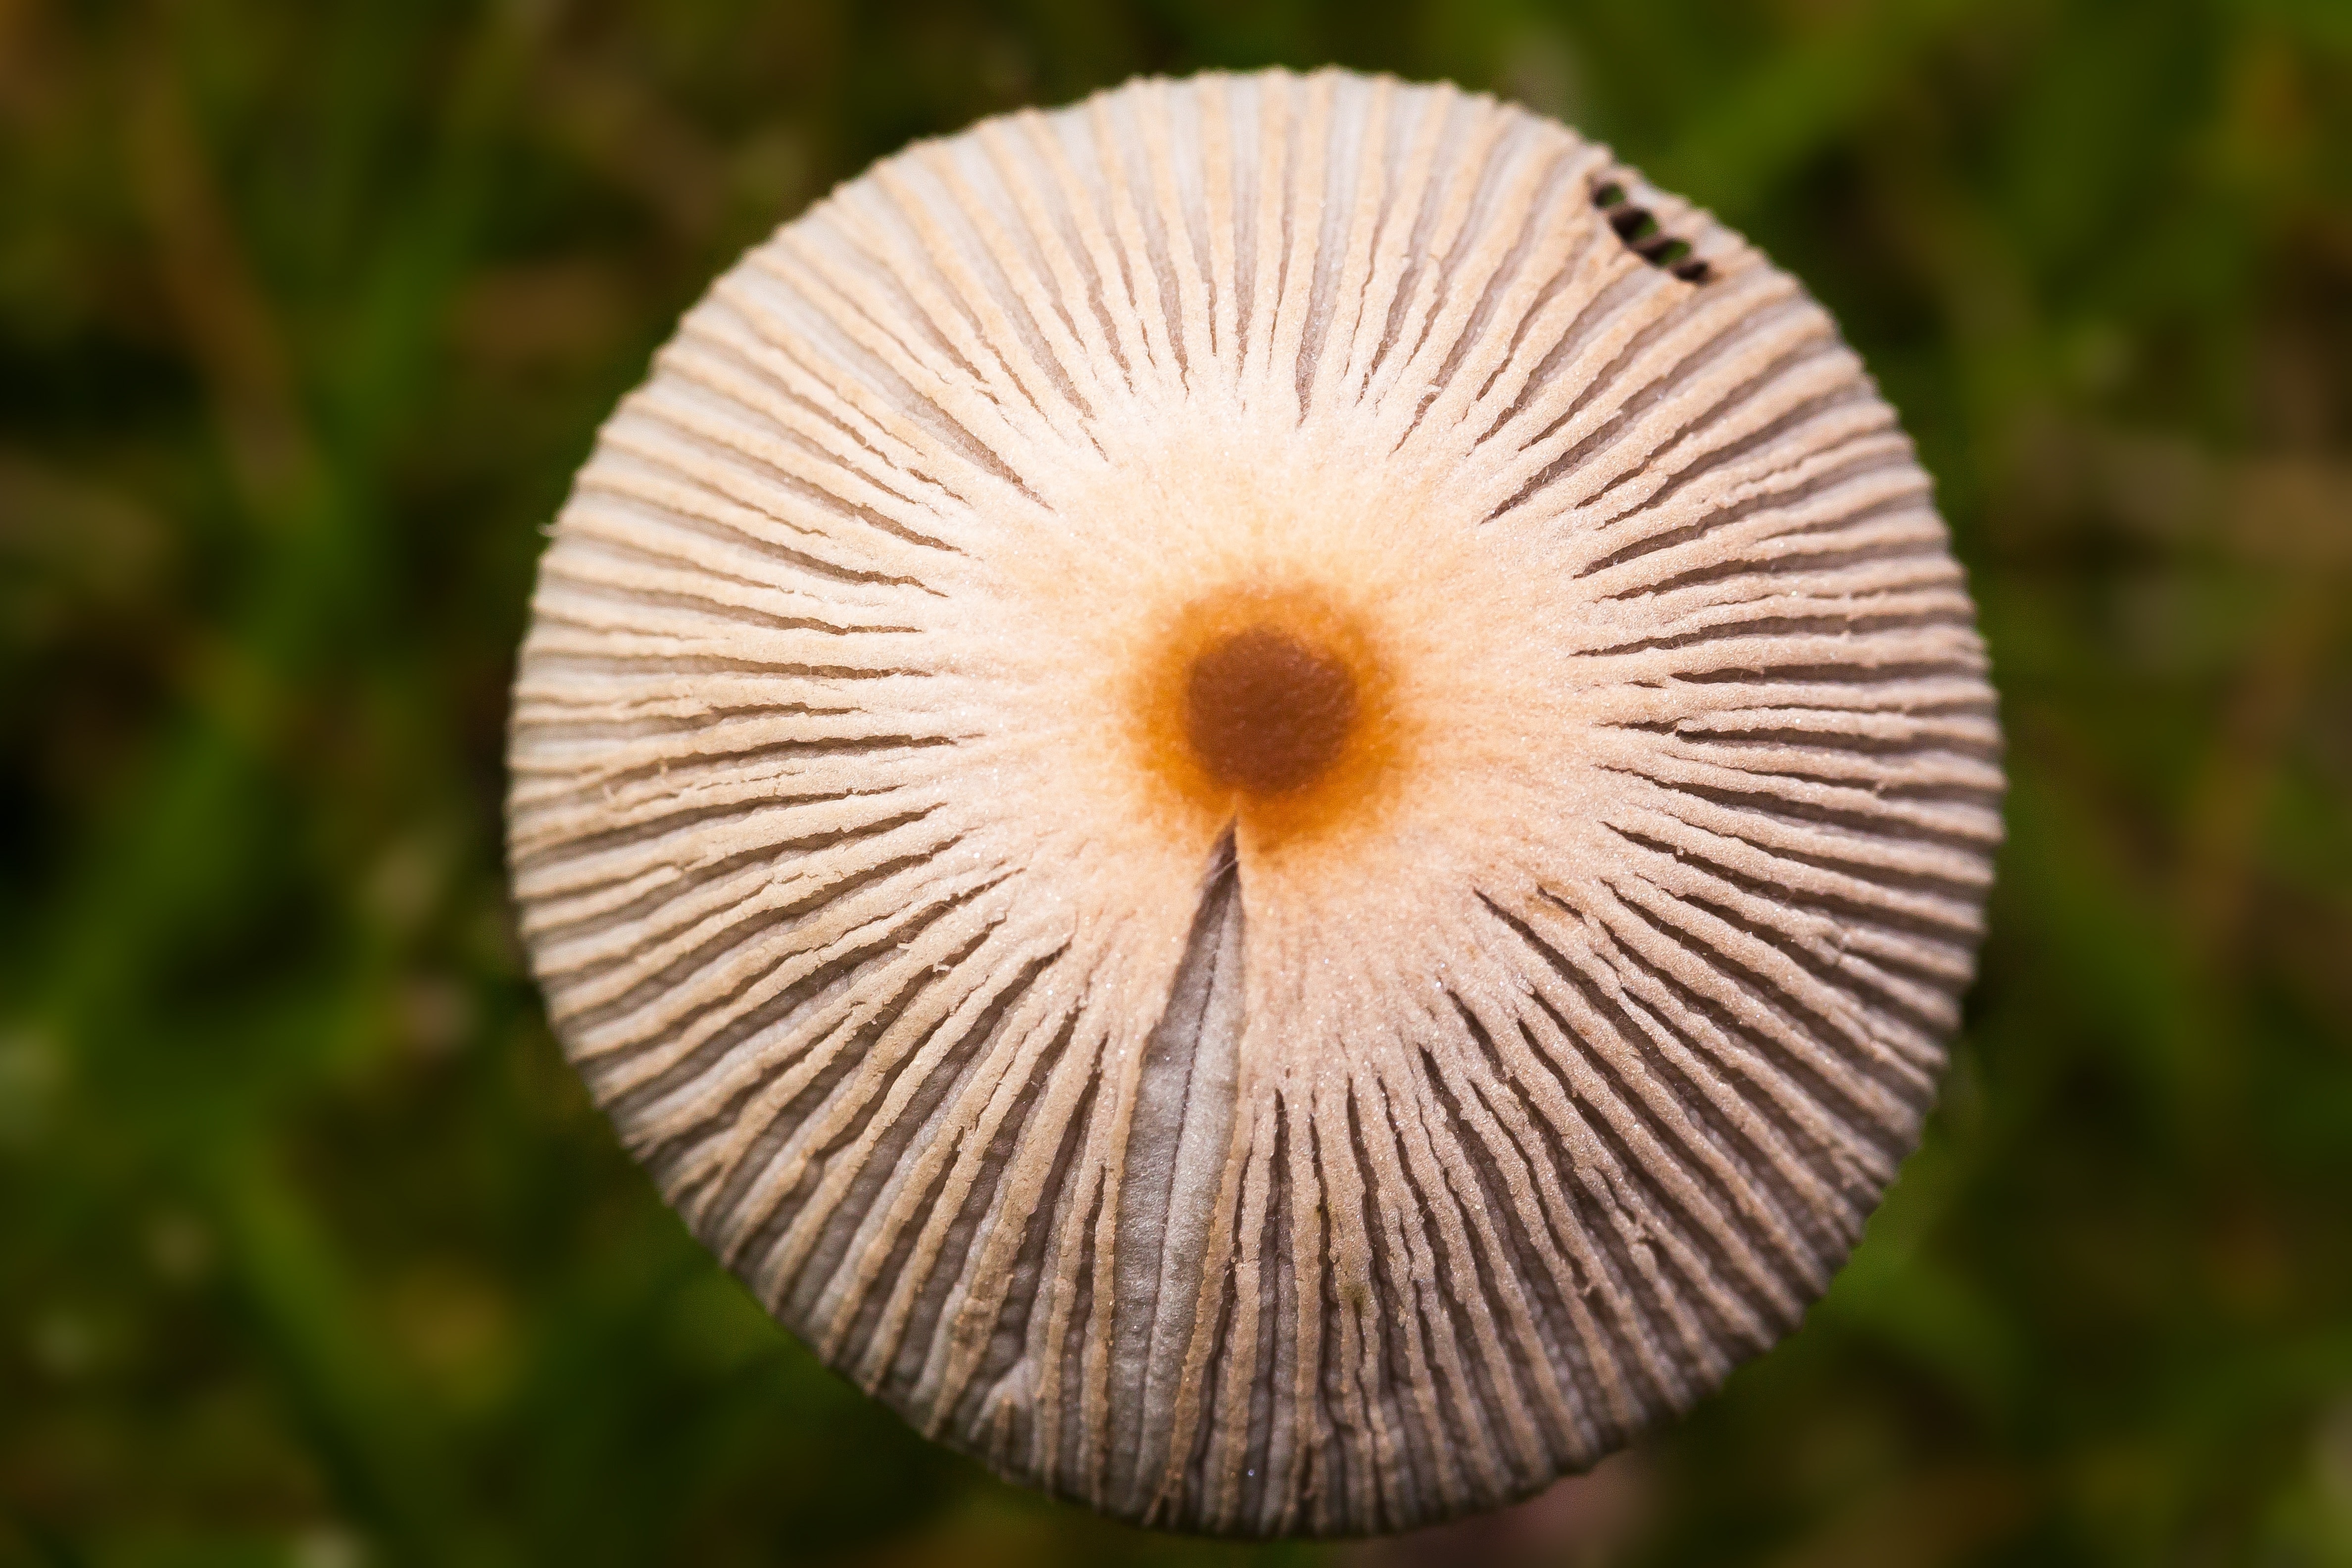 Grass, Cap, Disc Fungus, Mushroom, close-up, fragility